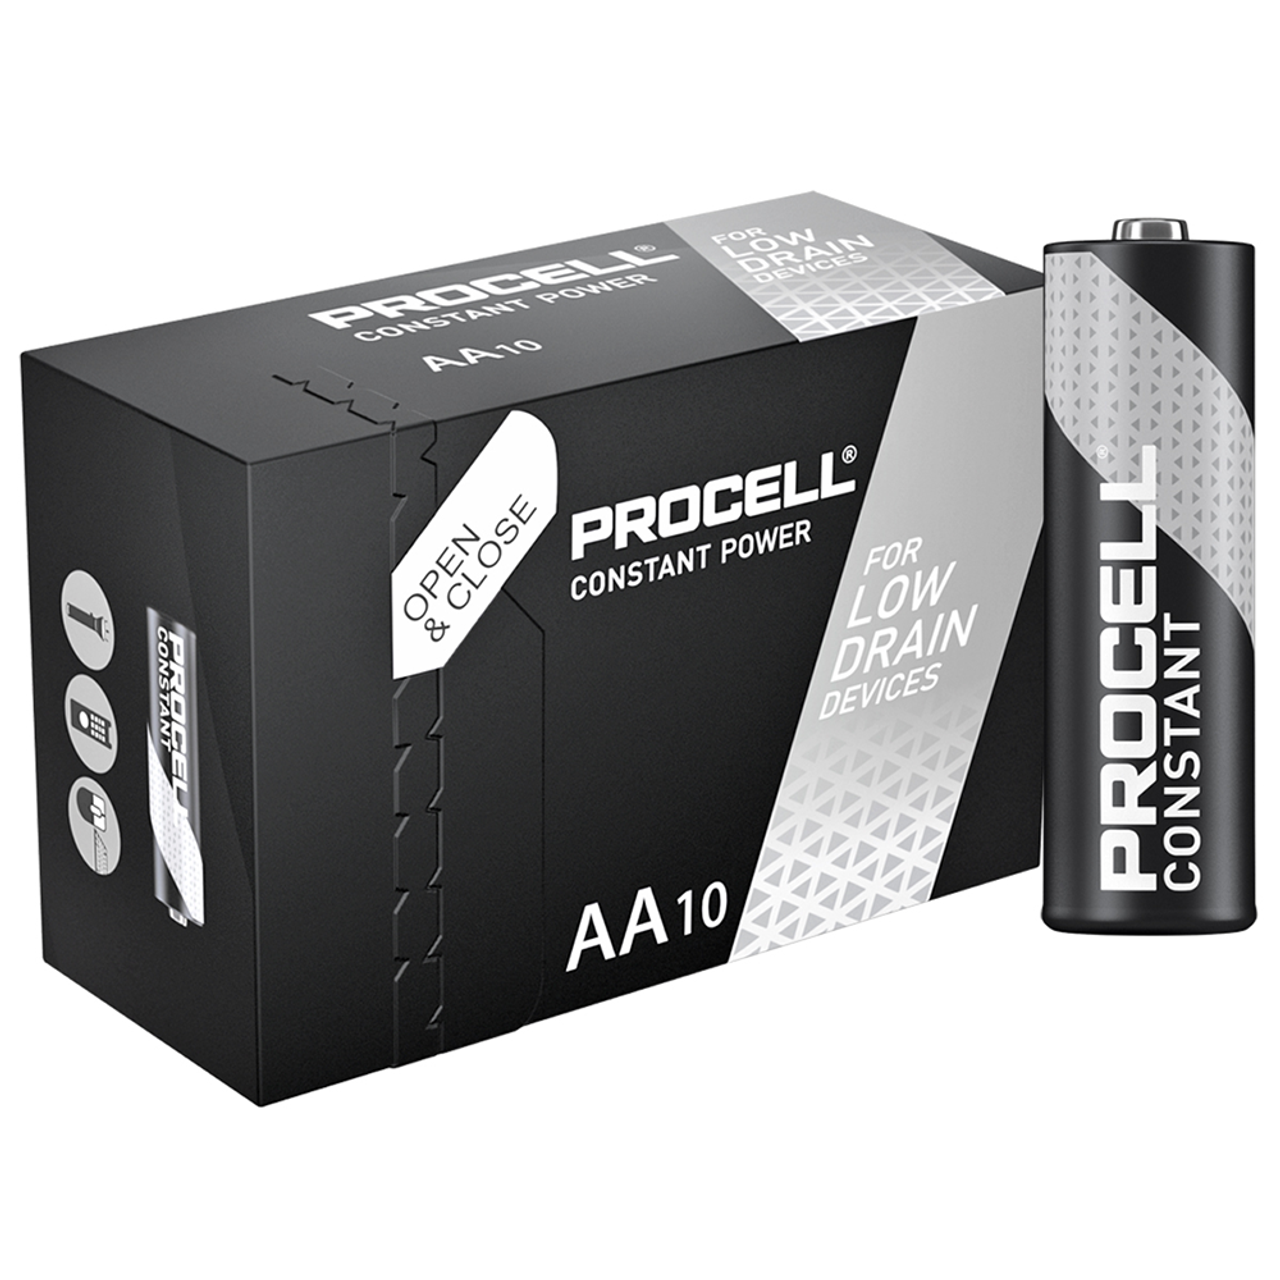 AA + AAA 1.5V batterie Rechargeable pile alcaline  – Grandado